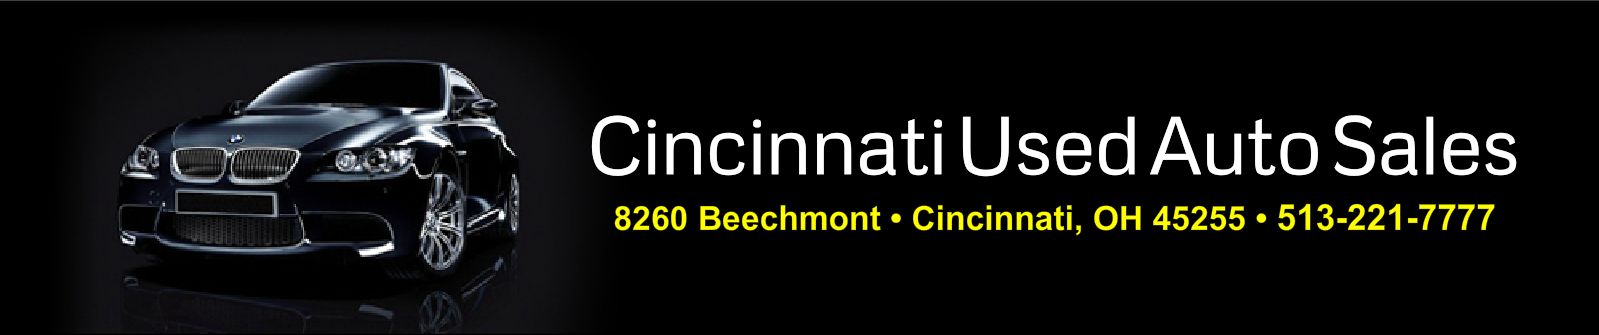 Cincinnati Used Auto Sales LLC